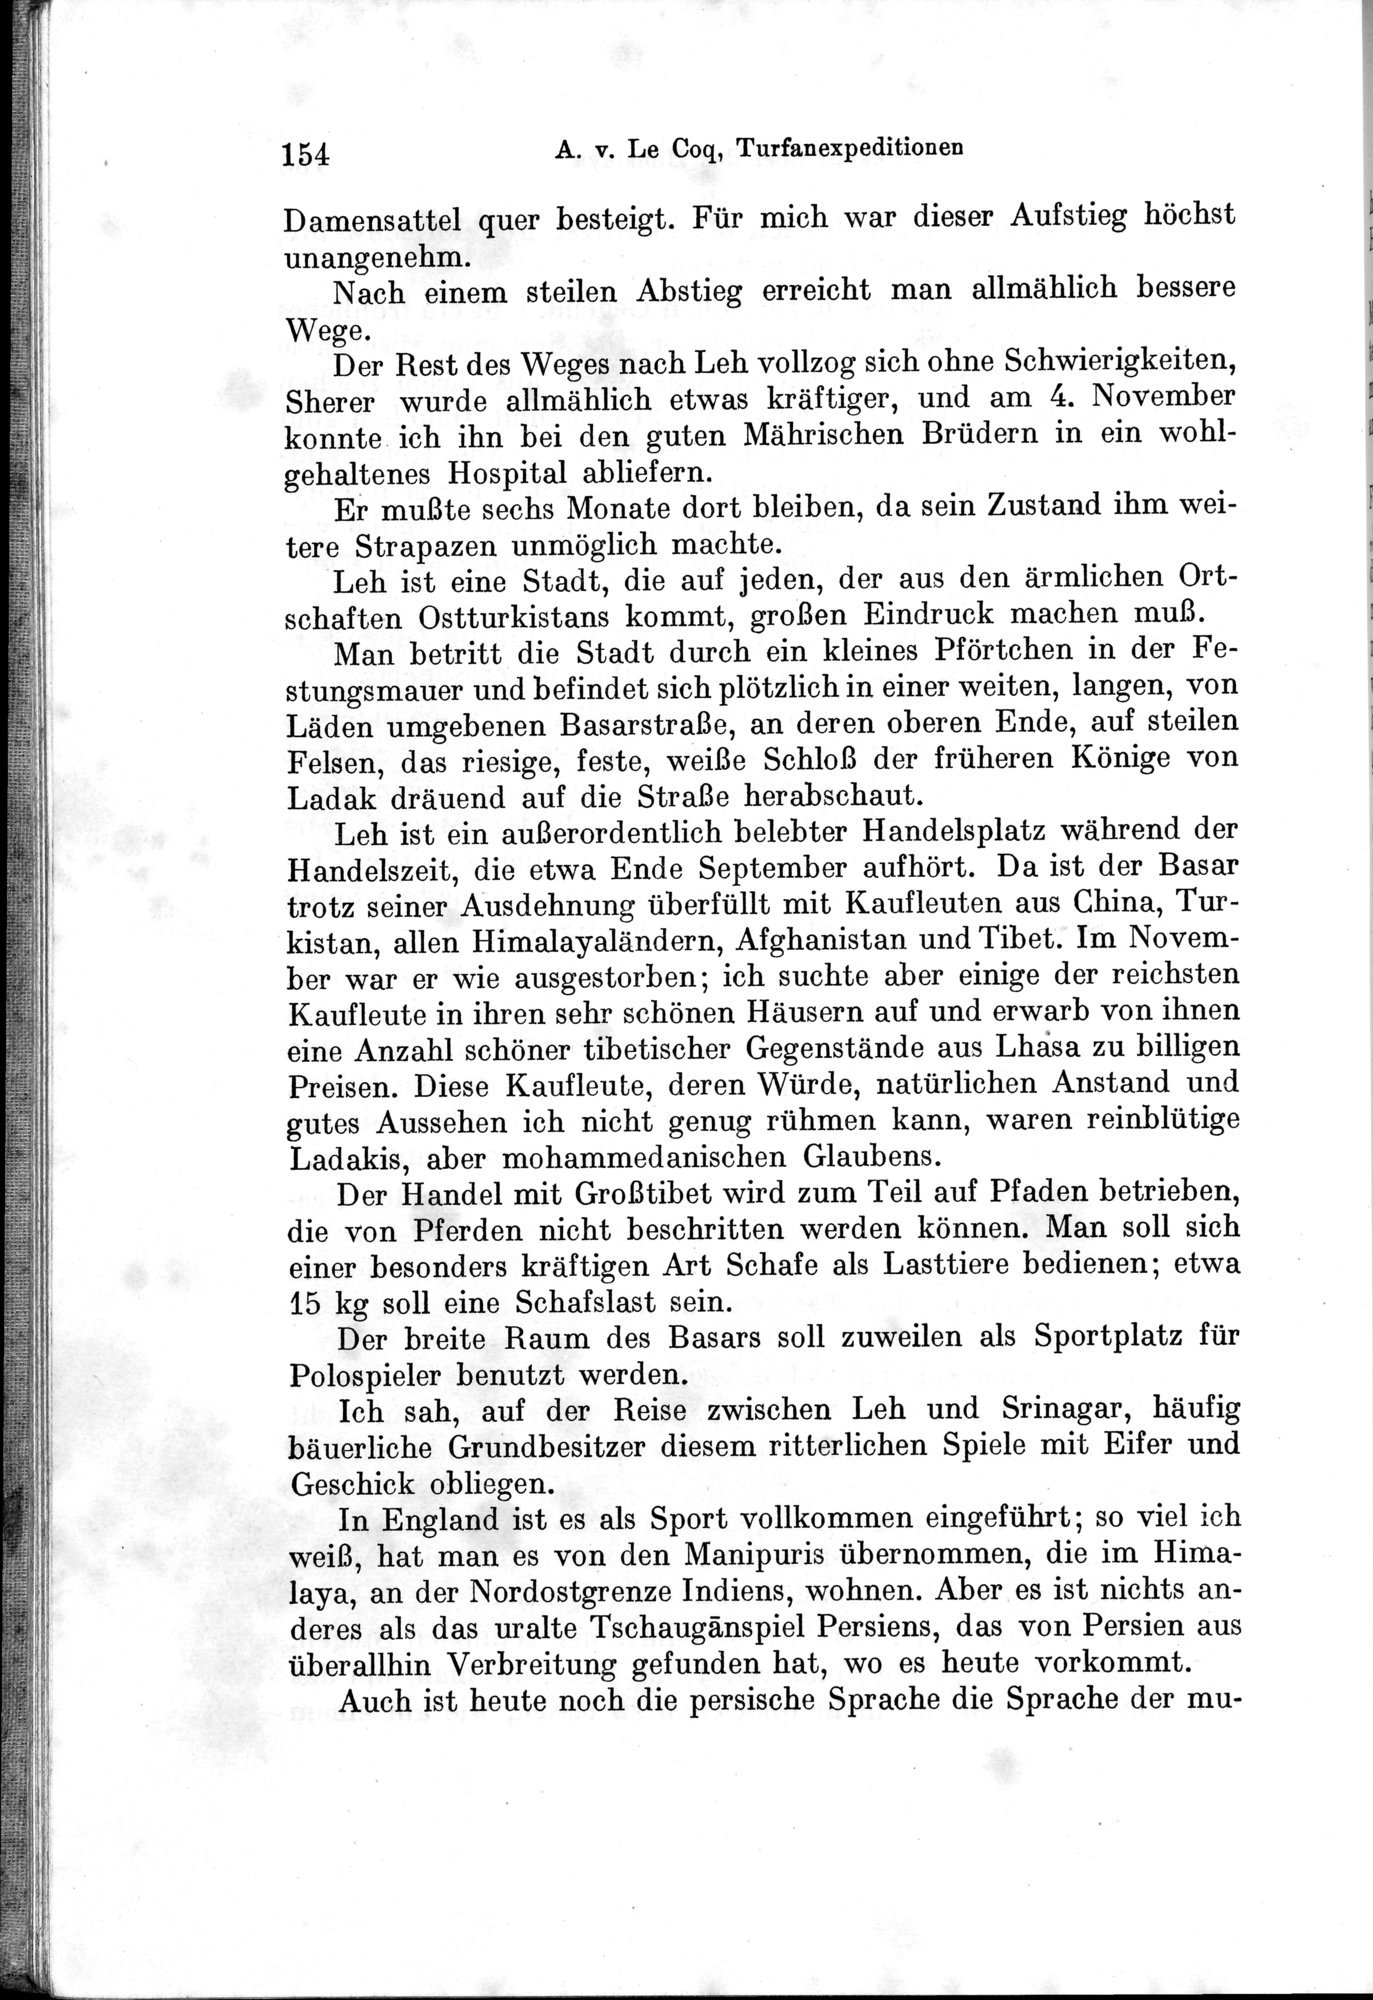 Auf Hellas Spuren in Ostturkistan : vol.1 / Page 222 (Grayscale High Resolution Image)